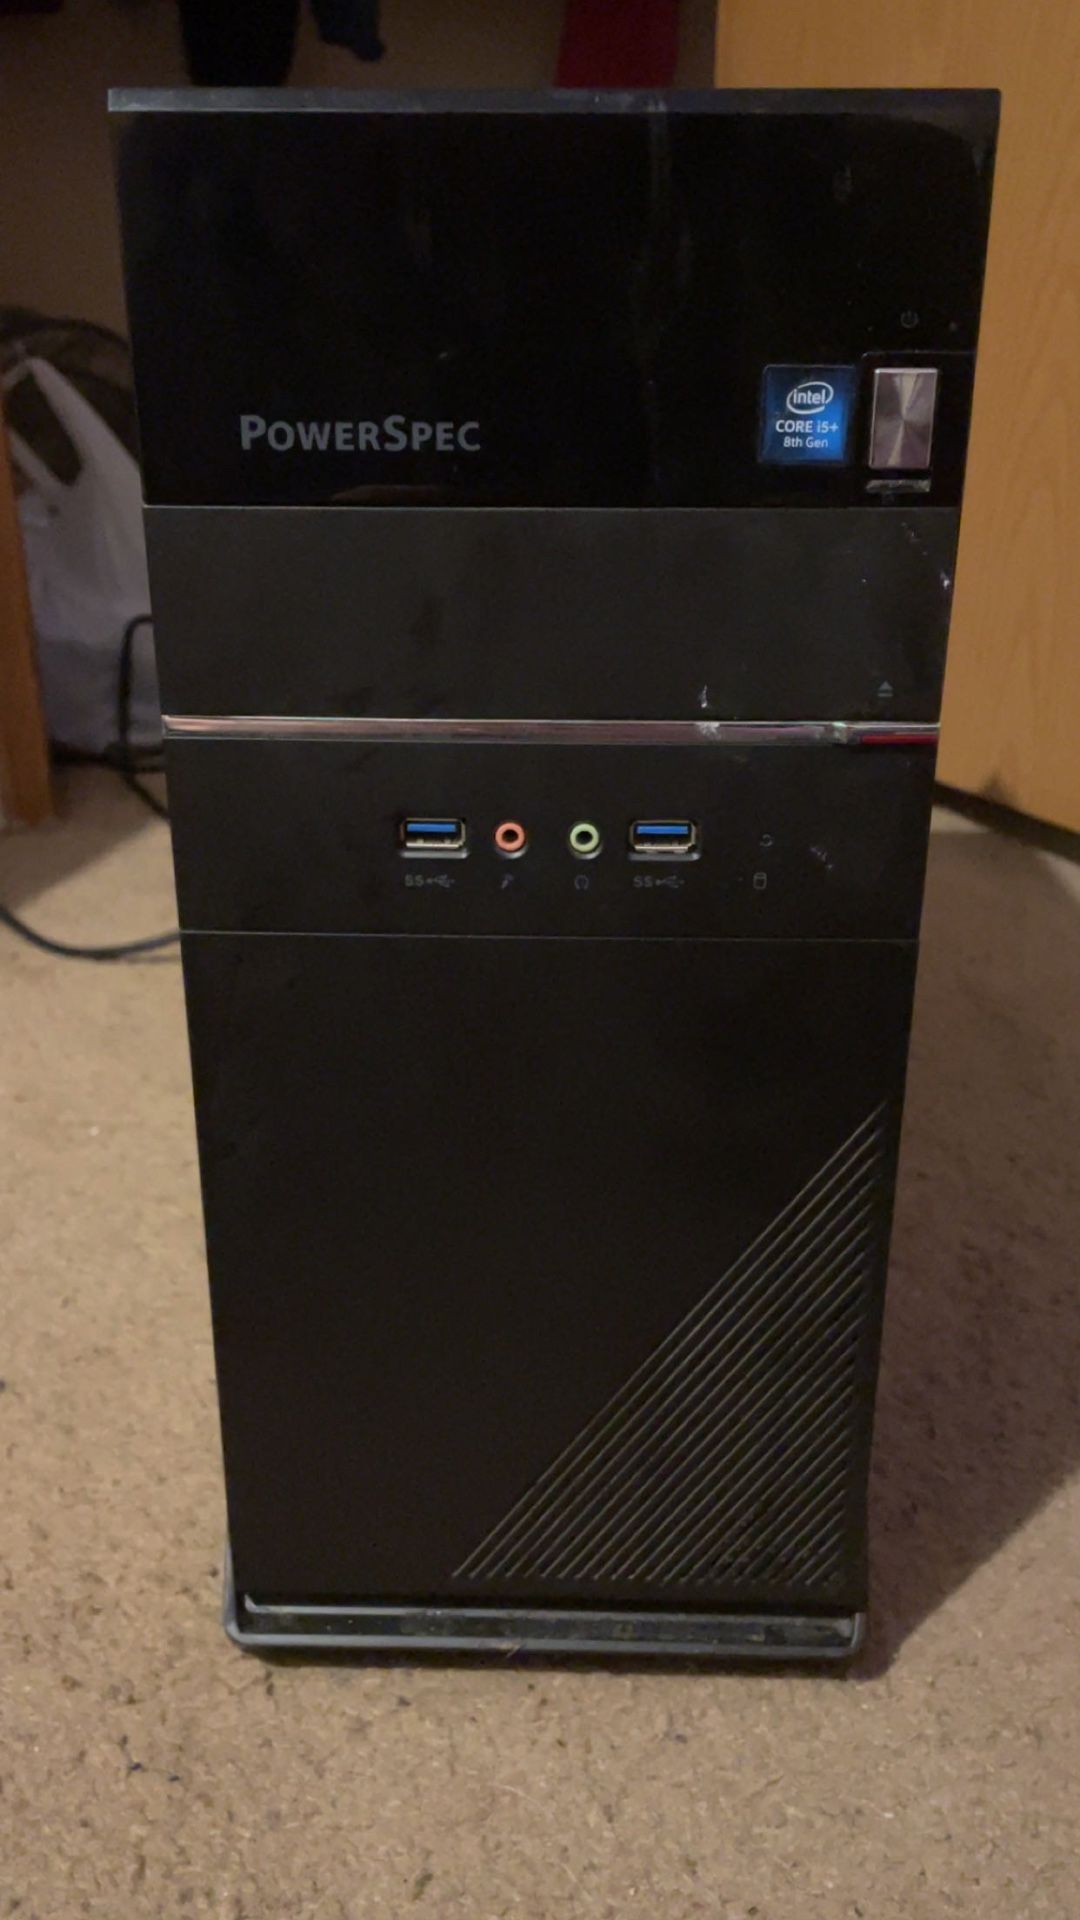 PowerSpec PC